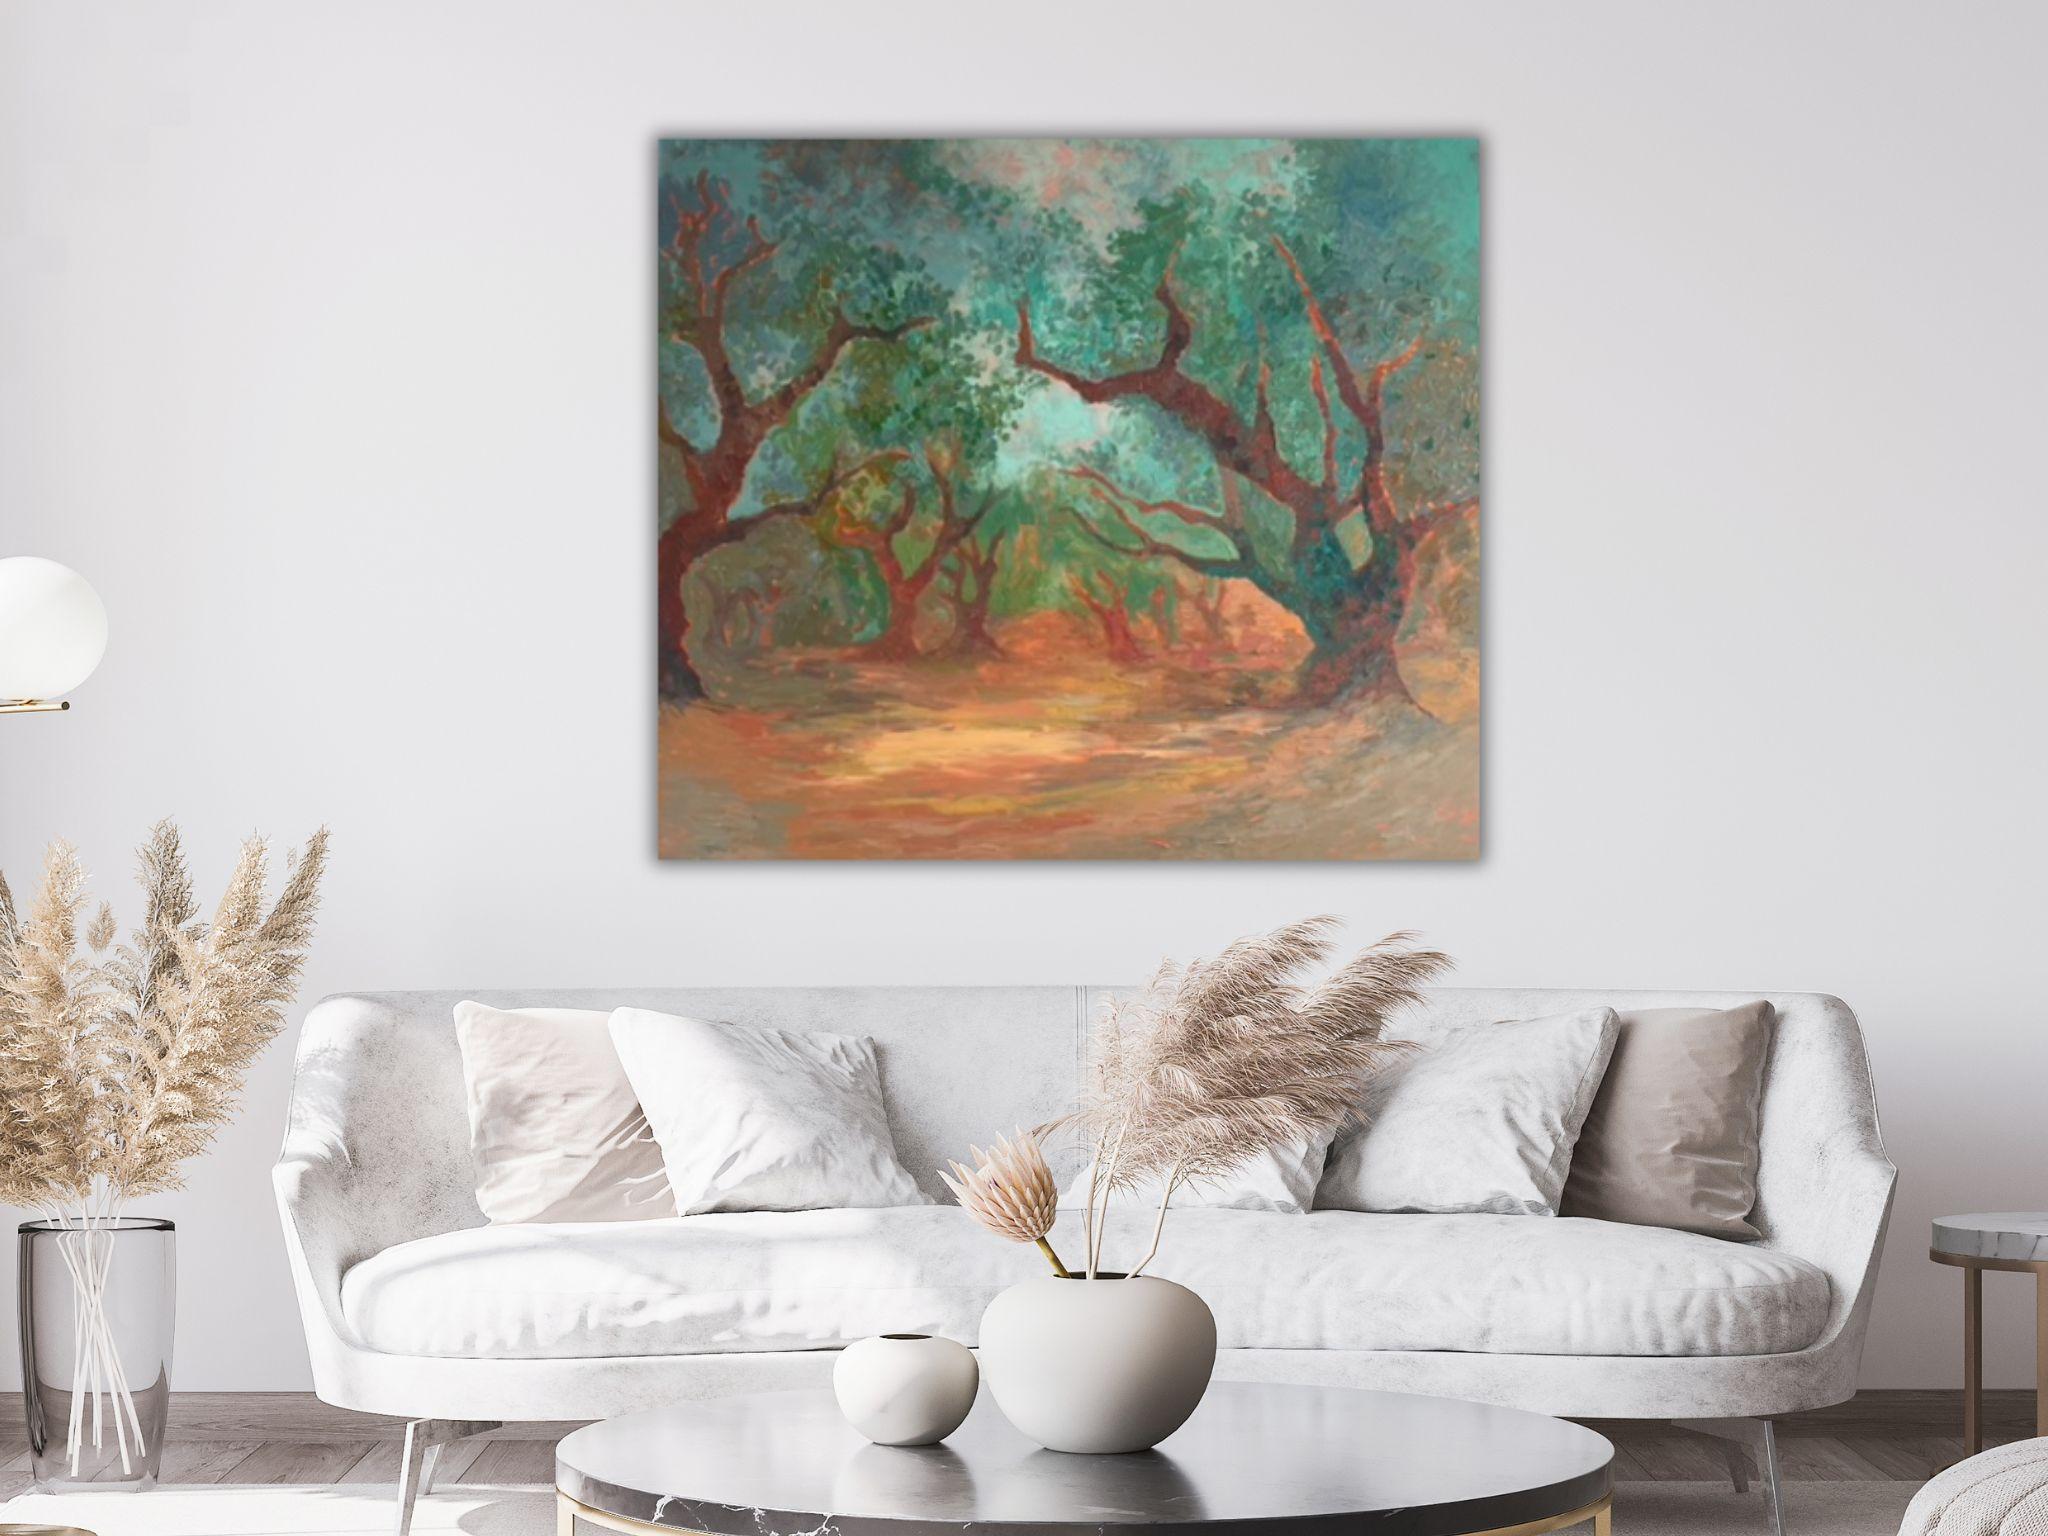 Peinture de paysage - SECRET GARDEN, huile sur toile - 40*32 in (100*80cm) - Impressionnisme Painting par Dasha Pogodina